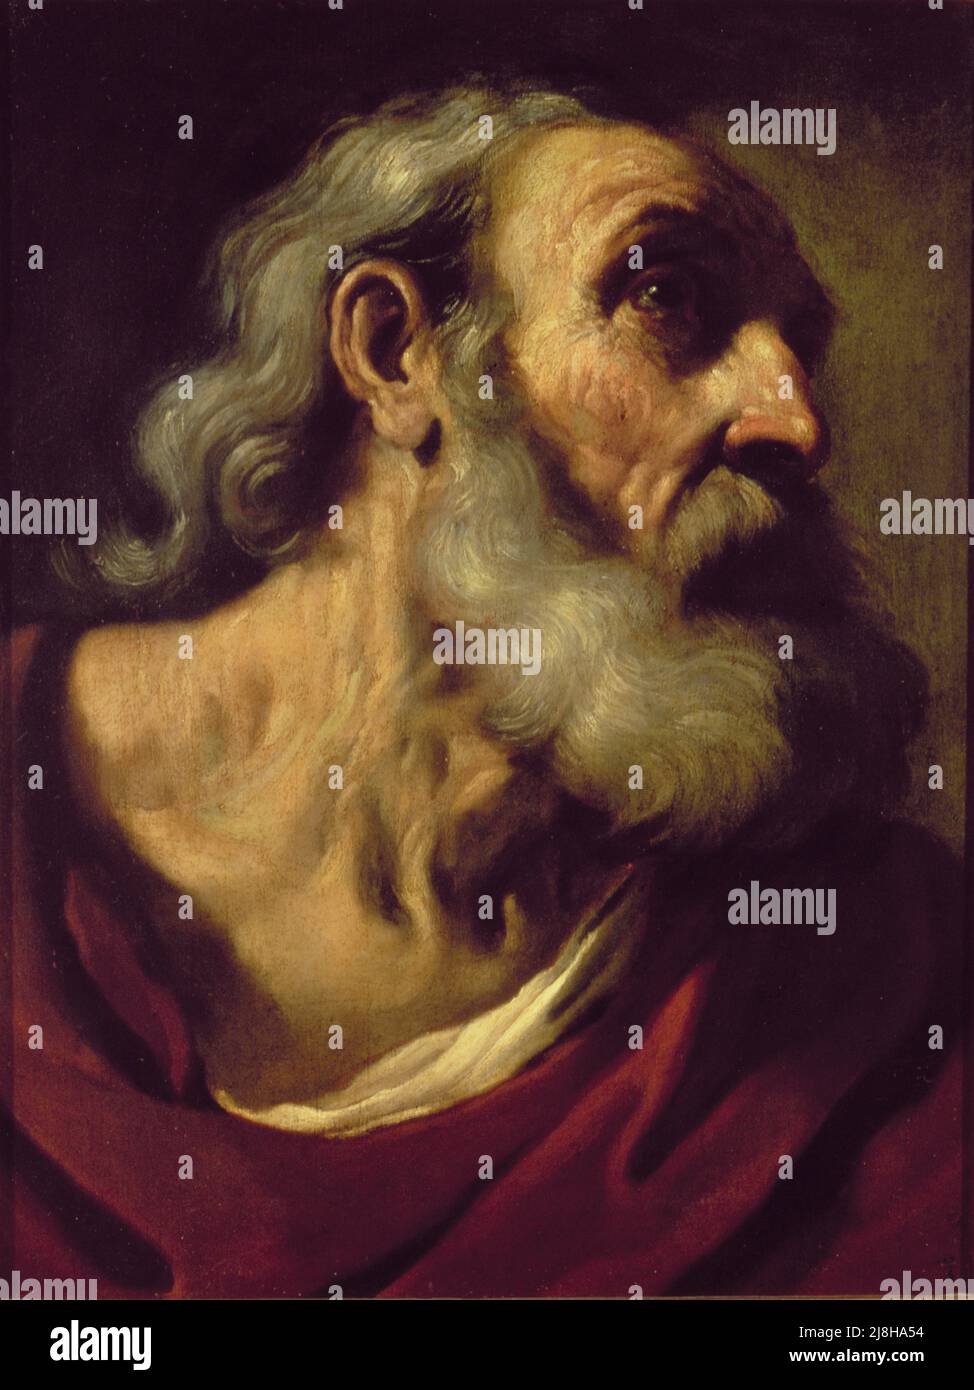 St. Peter von Guercino (Giovanni Francesco Barbieri) (1591-1666); Palazzo Pitti, Florenz, Italien; Italienisch, Außerhalb des Urheberrechts. Stockfoto